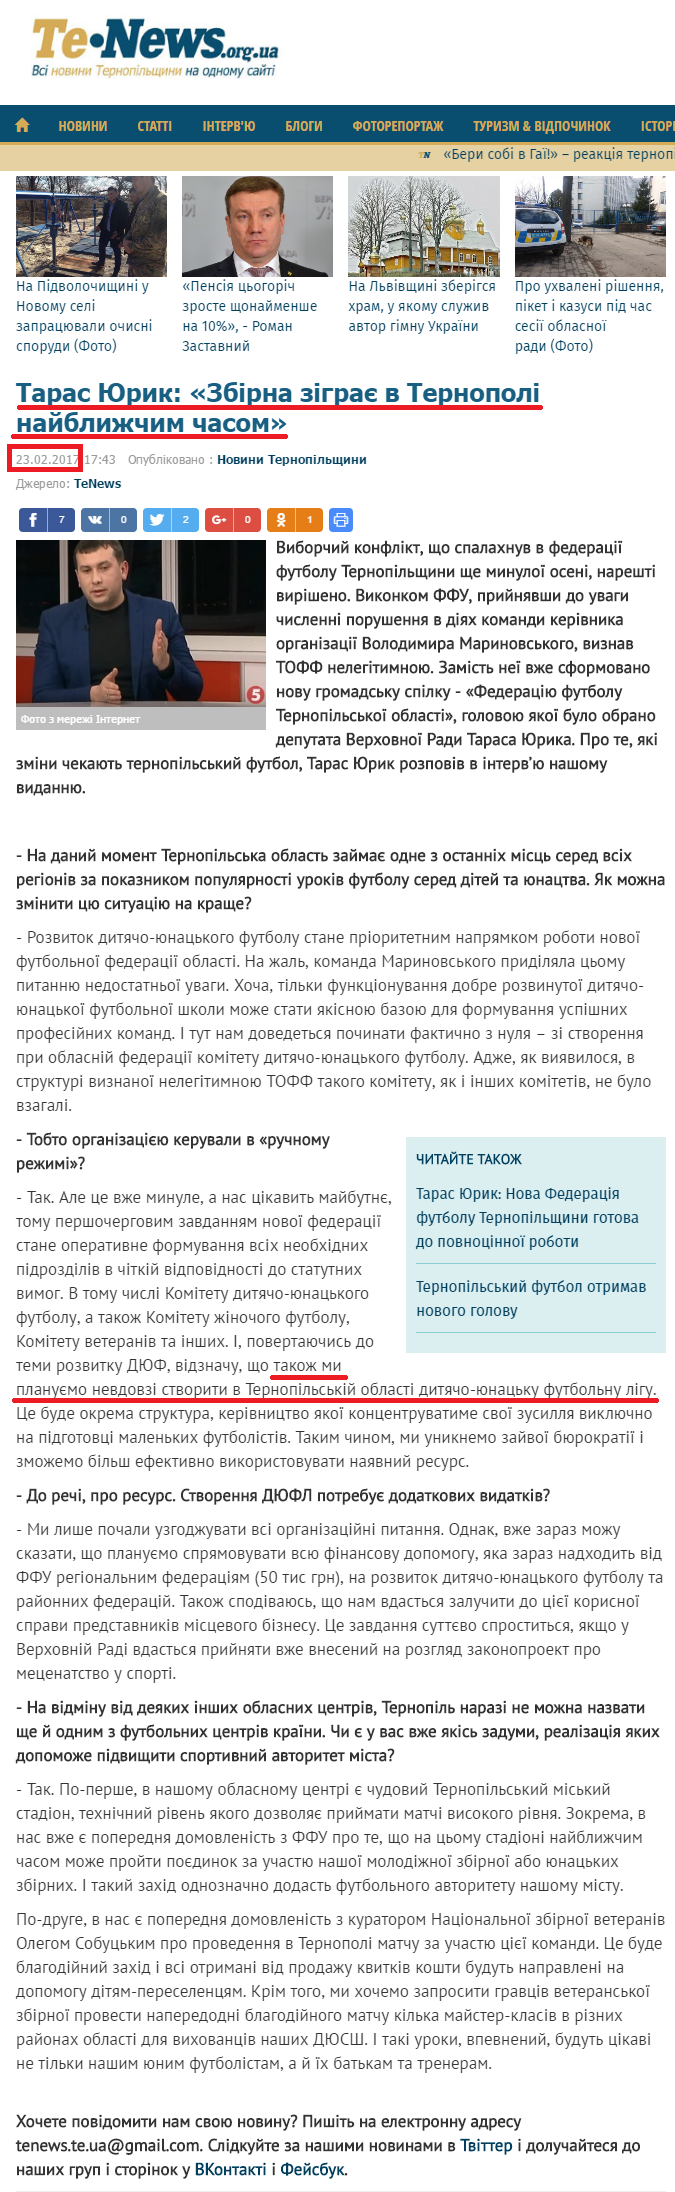 http://www.tenews.org.ua/post/view/1487864600-taras-yurik--zbirna-zigrae-v-ternopoli-nayblizhchim-chasom